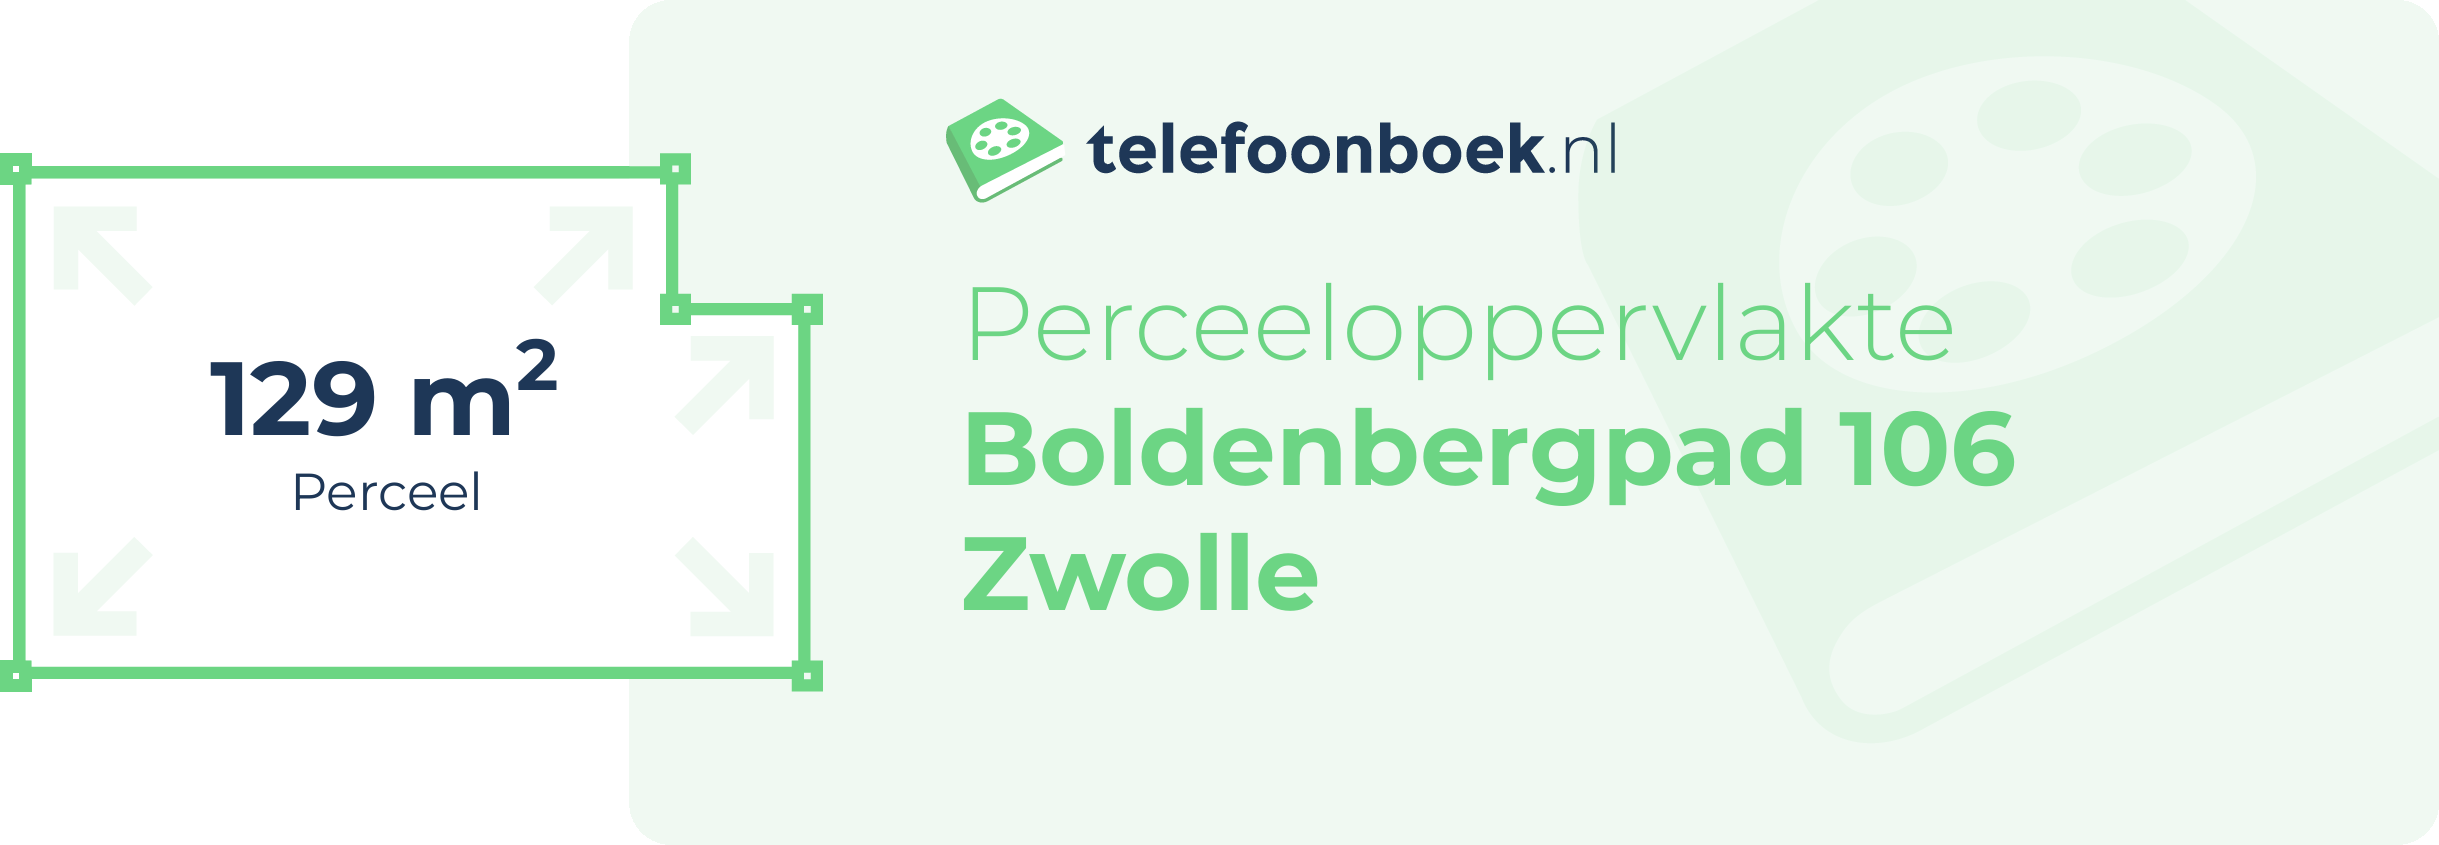 Perceeloppervlakte Boldenbergpad 106 Zwolle